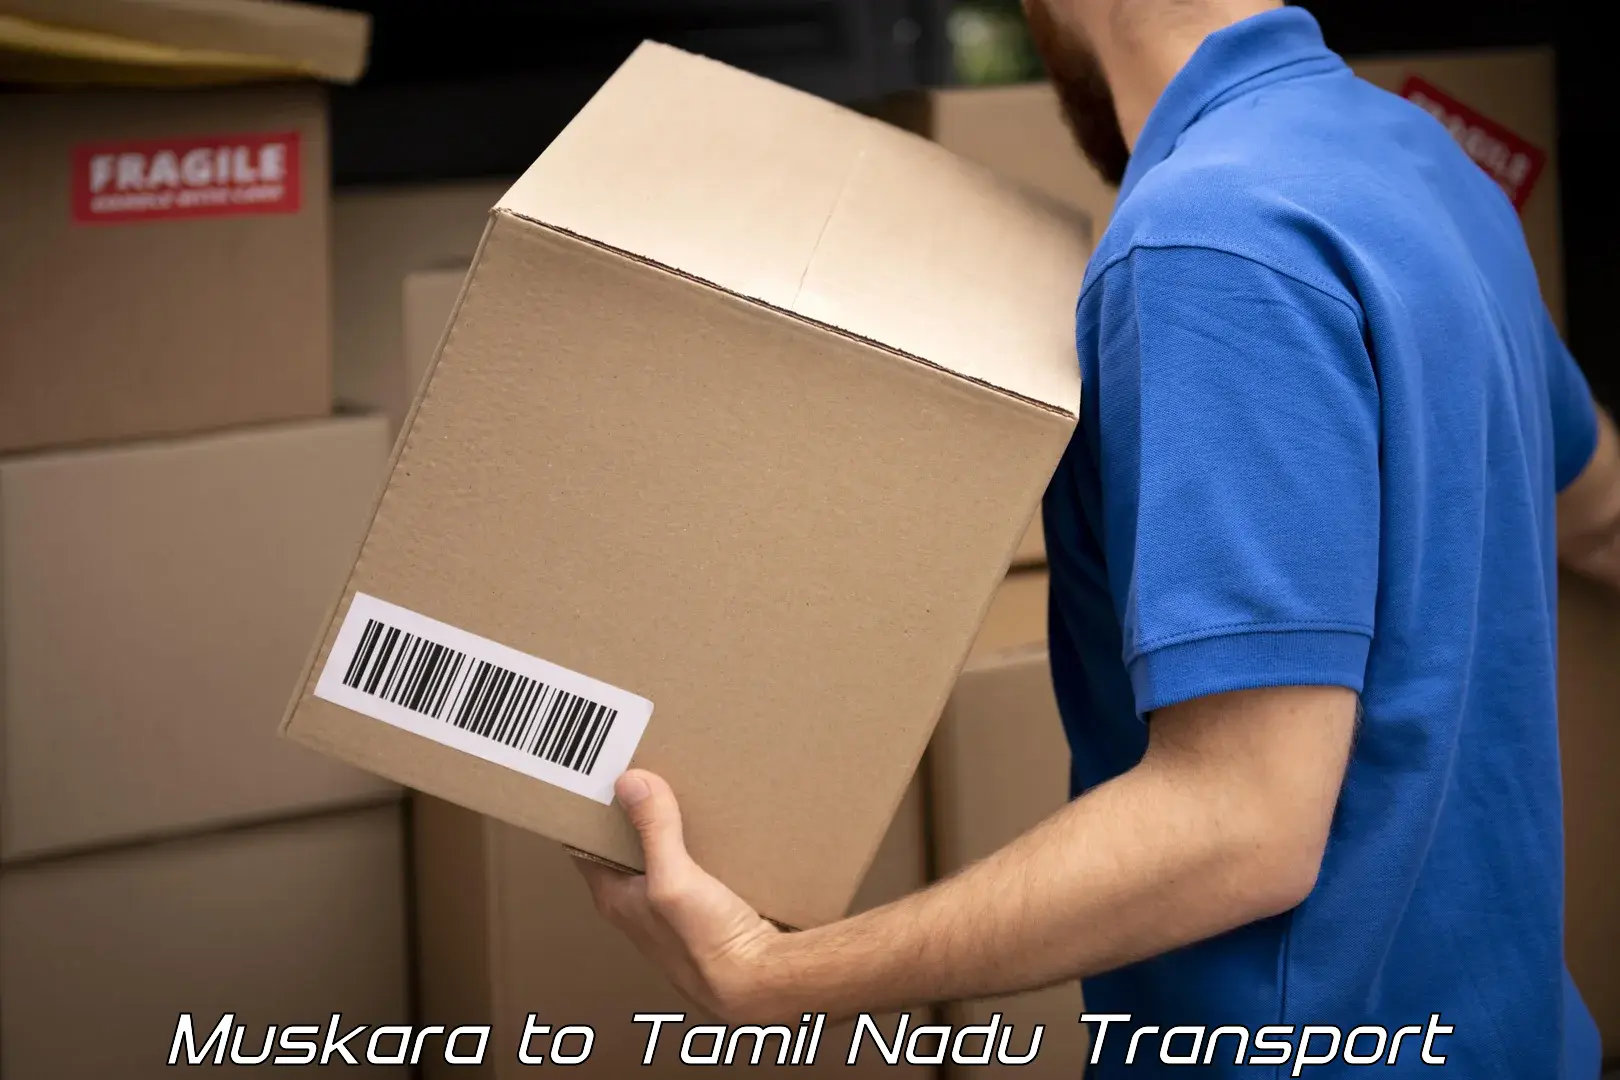 Transportation solution services Muskara to Chennai Port